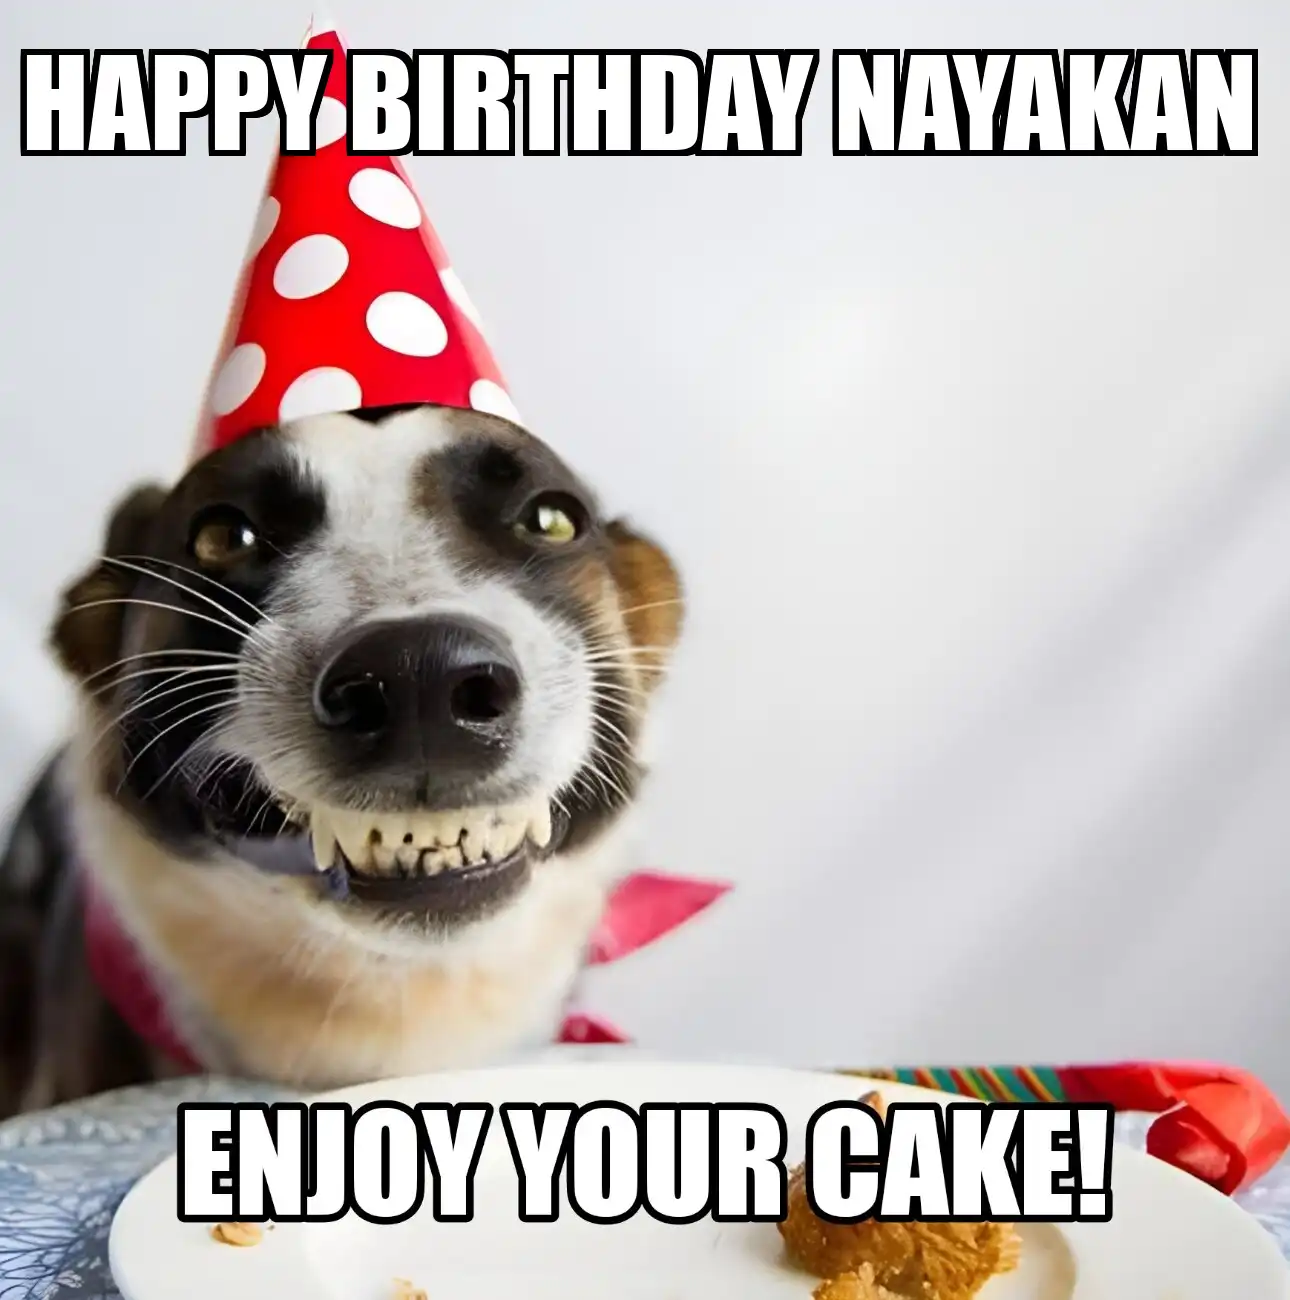 Happy Birthday Nayakan Enjoy Your Cake Dog Meme